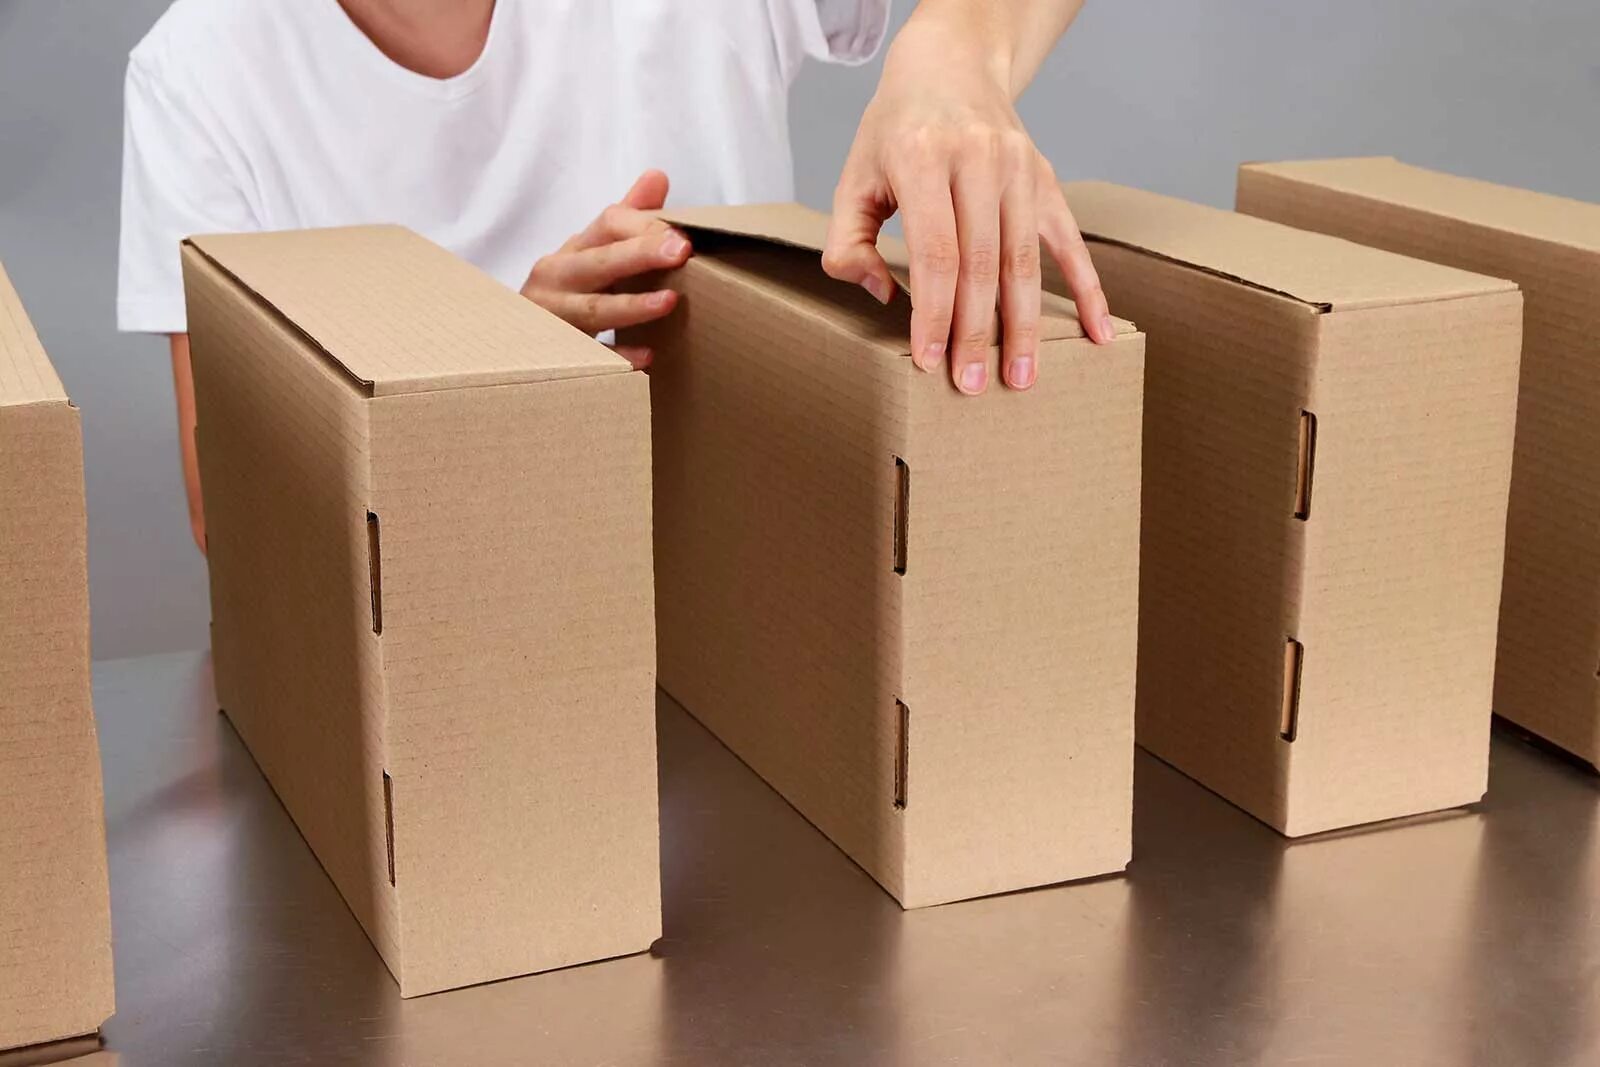 Аккуратно упакован. Упаковка коробки. Коробки для упаковки товара. Коробки на складе. Картонные коробки склад.